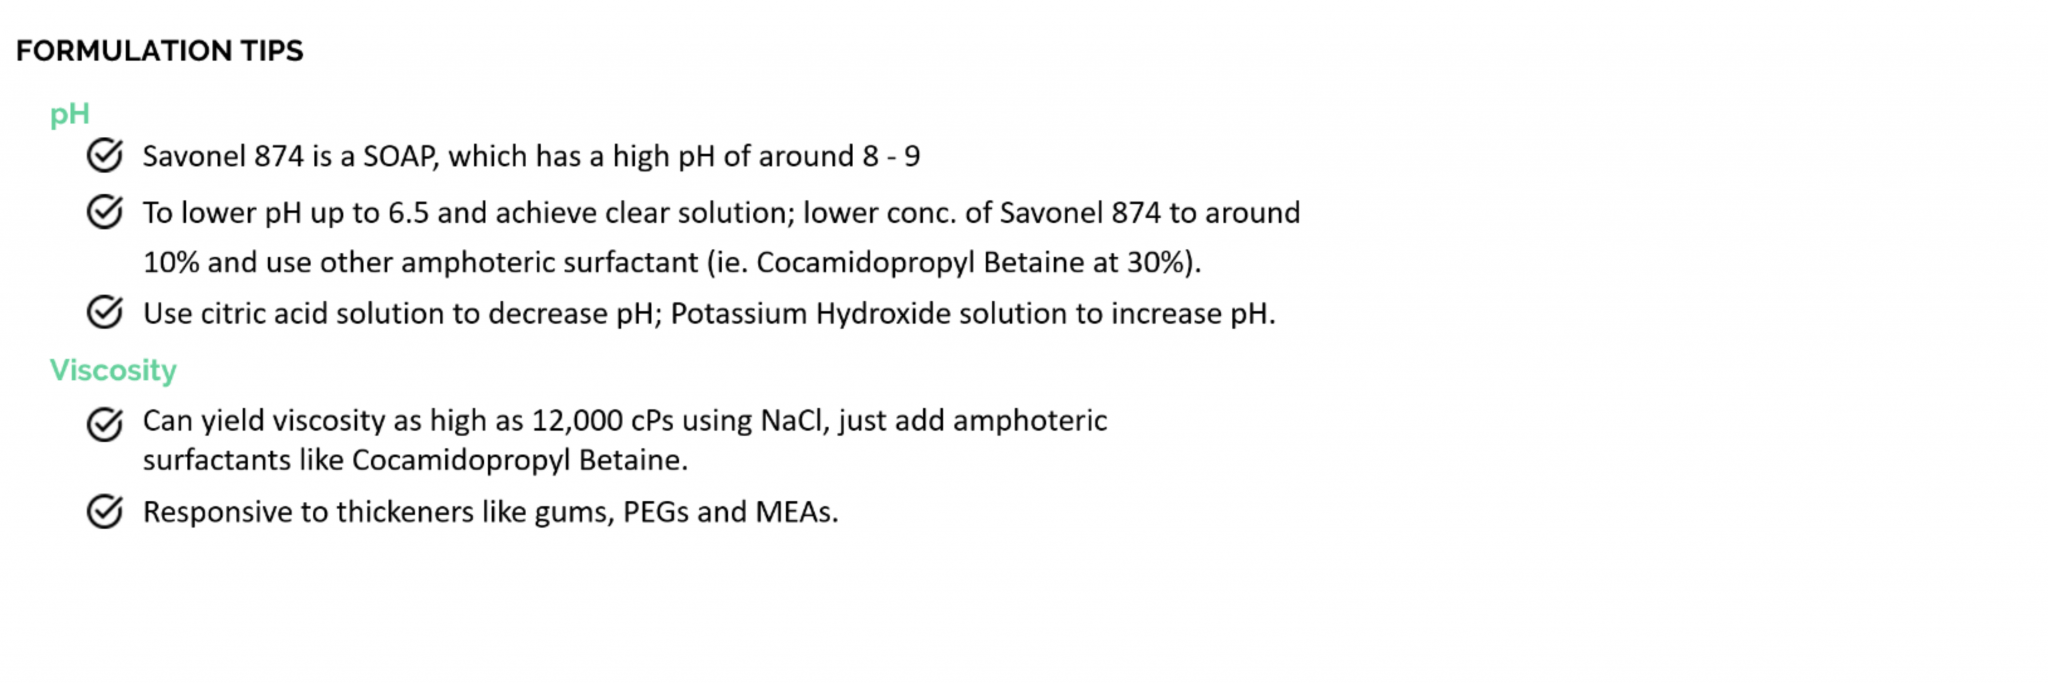 sufravon 874 formulation tips